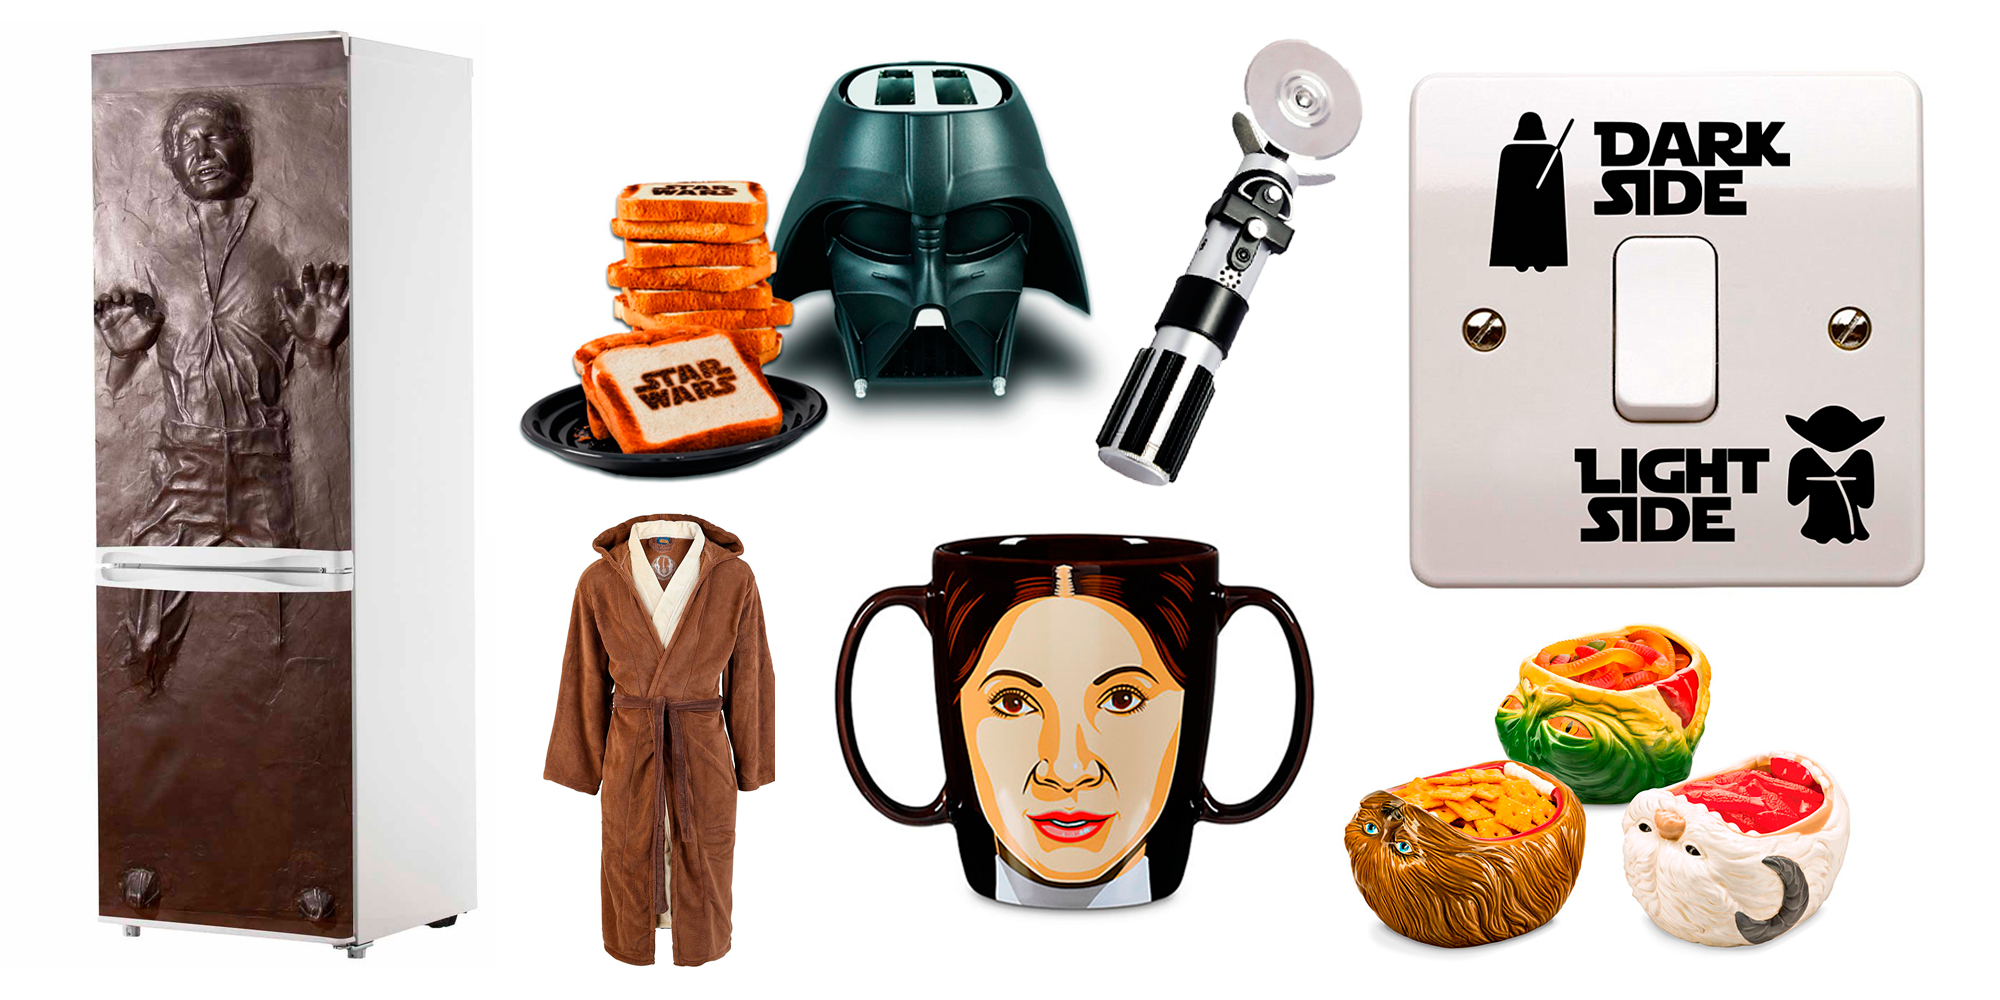 Regalos Star Wars: 20 productos de merchandising baratos y geniales